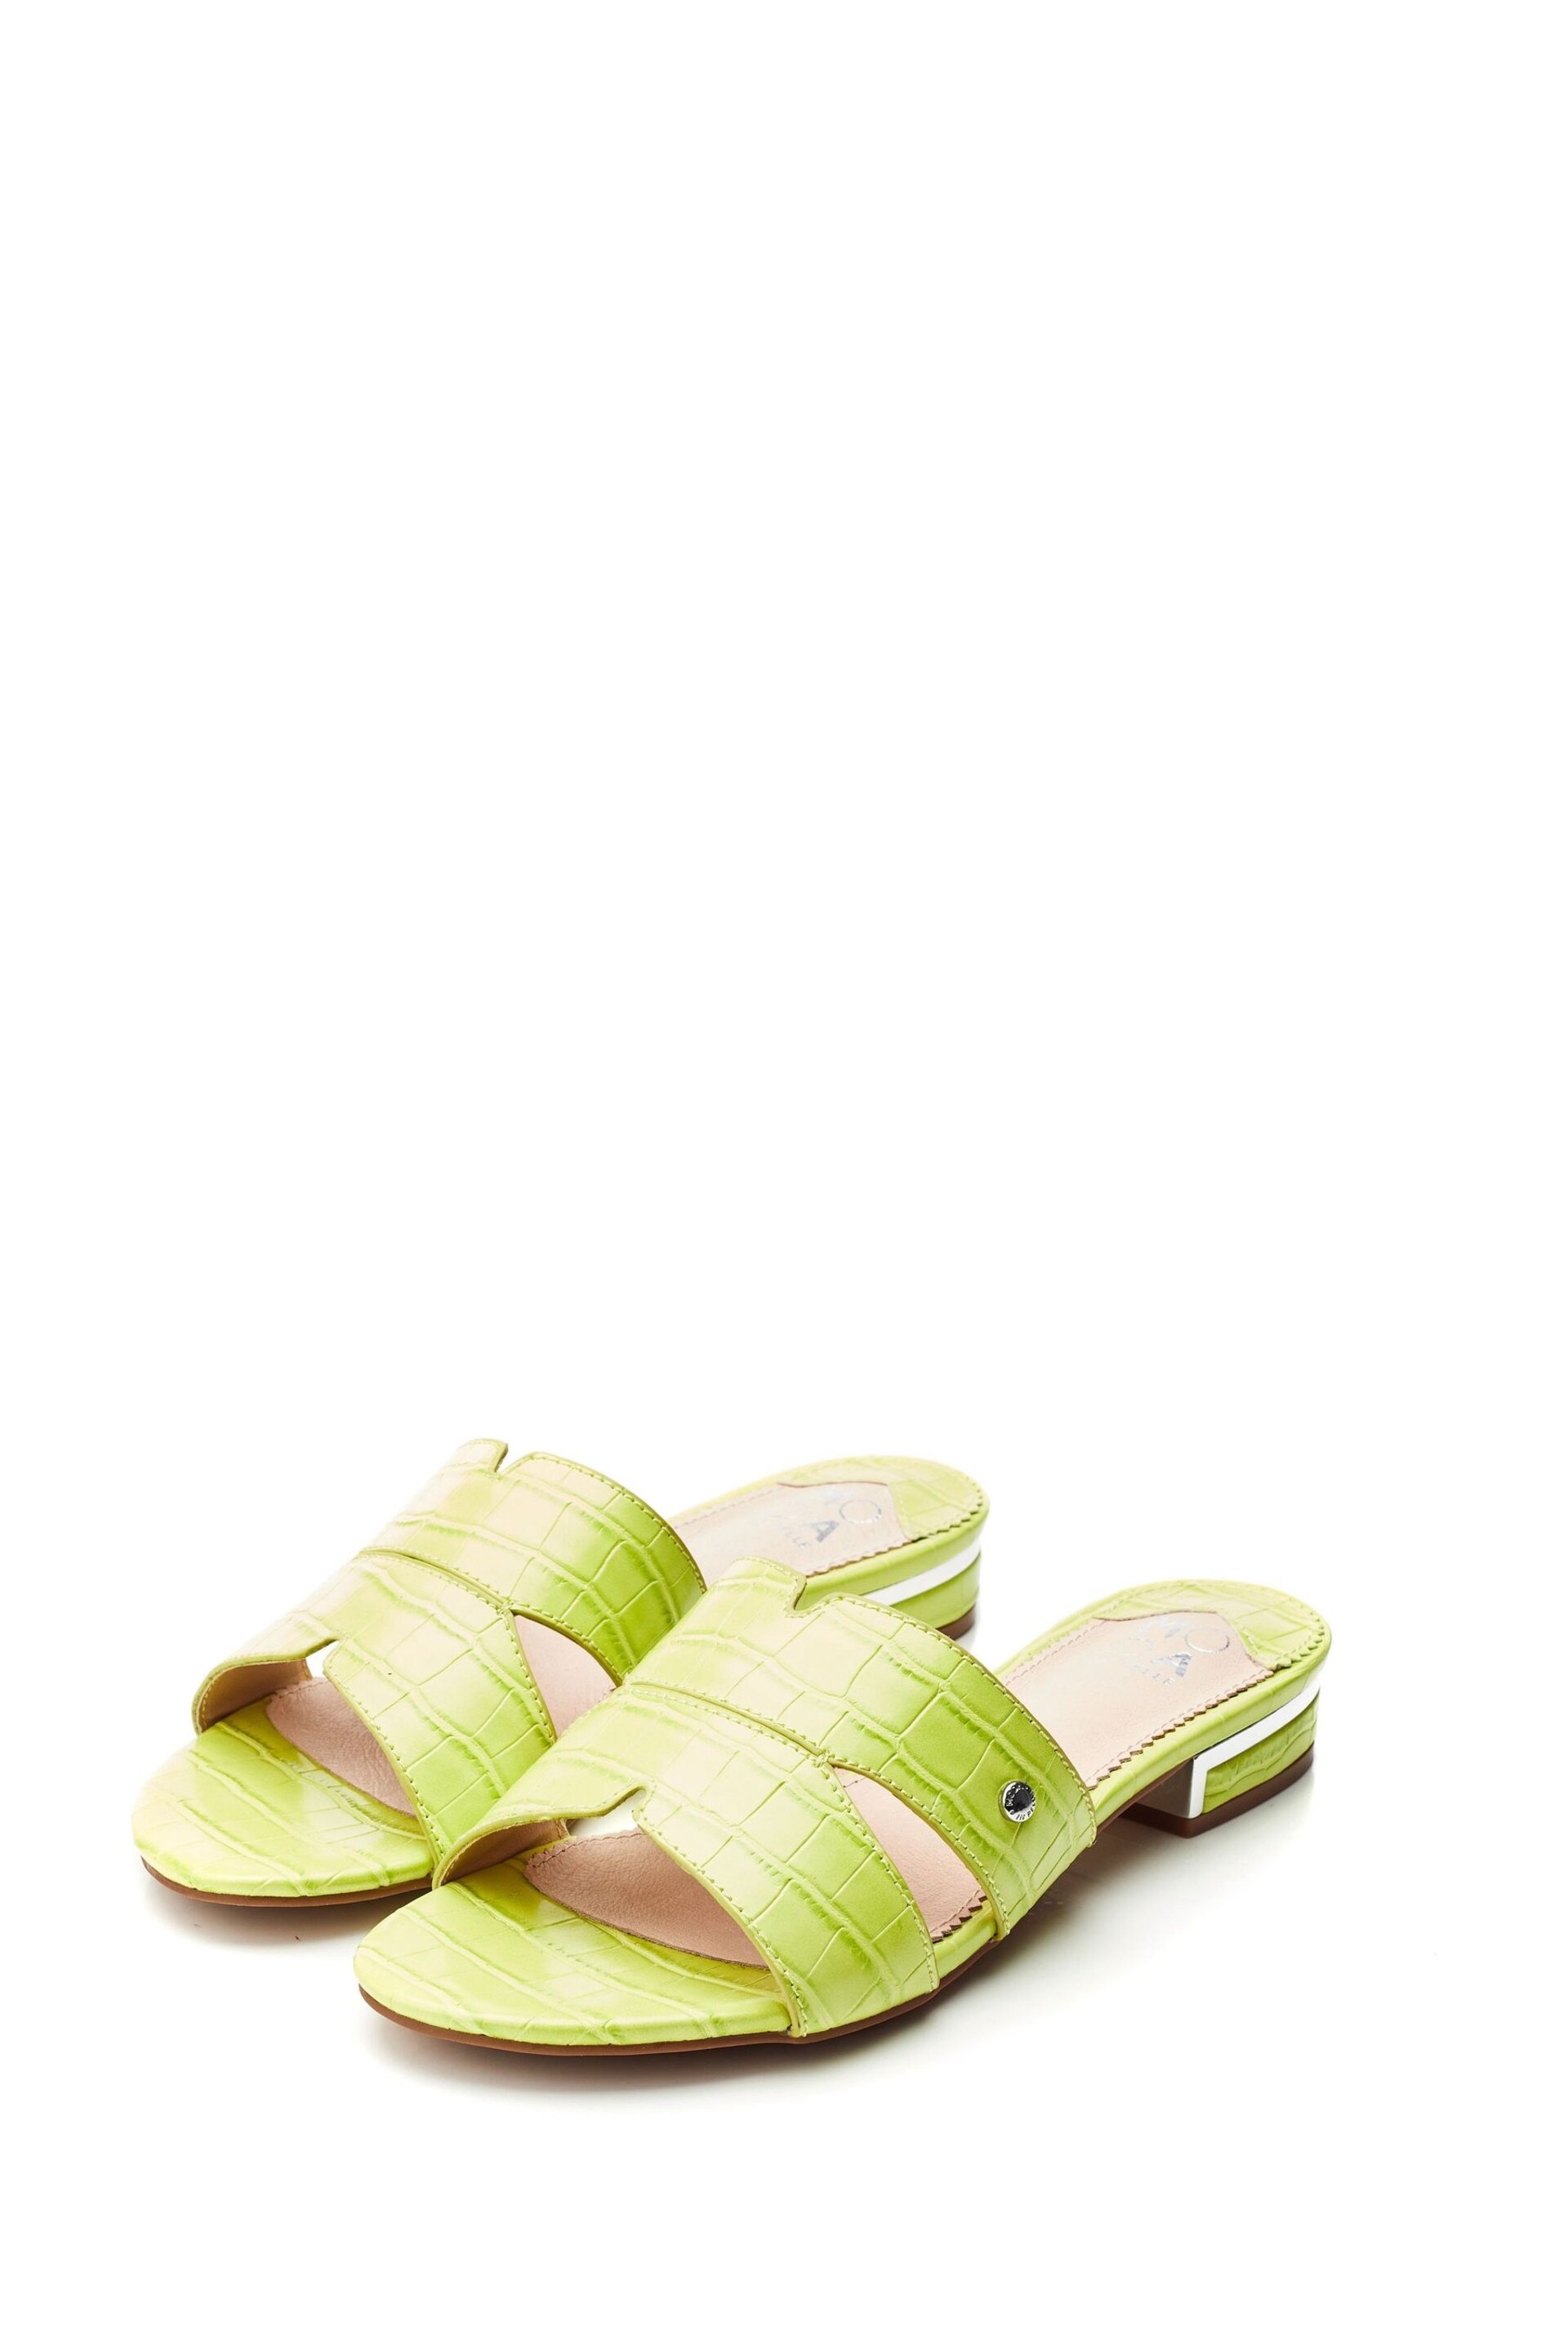 Moda in Pelle Green Murah M-Band Slider Sandals - Image 2 of 4